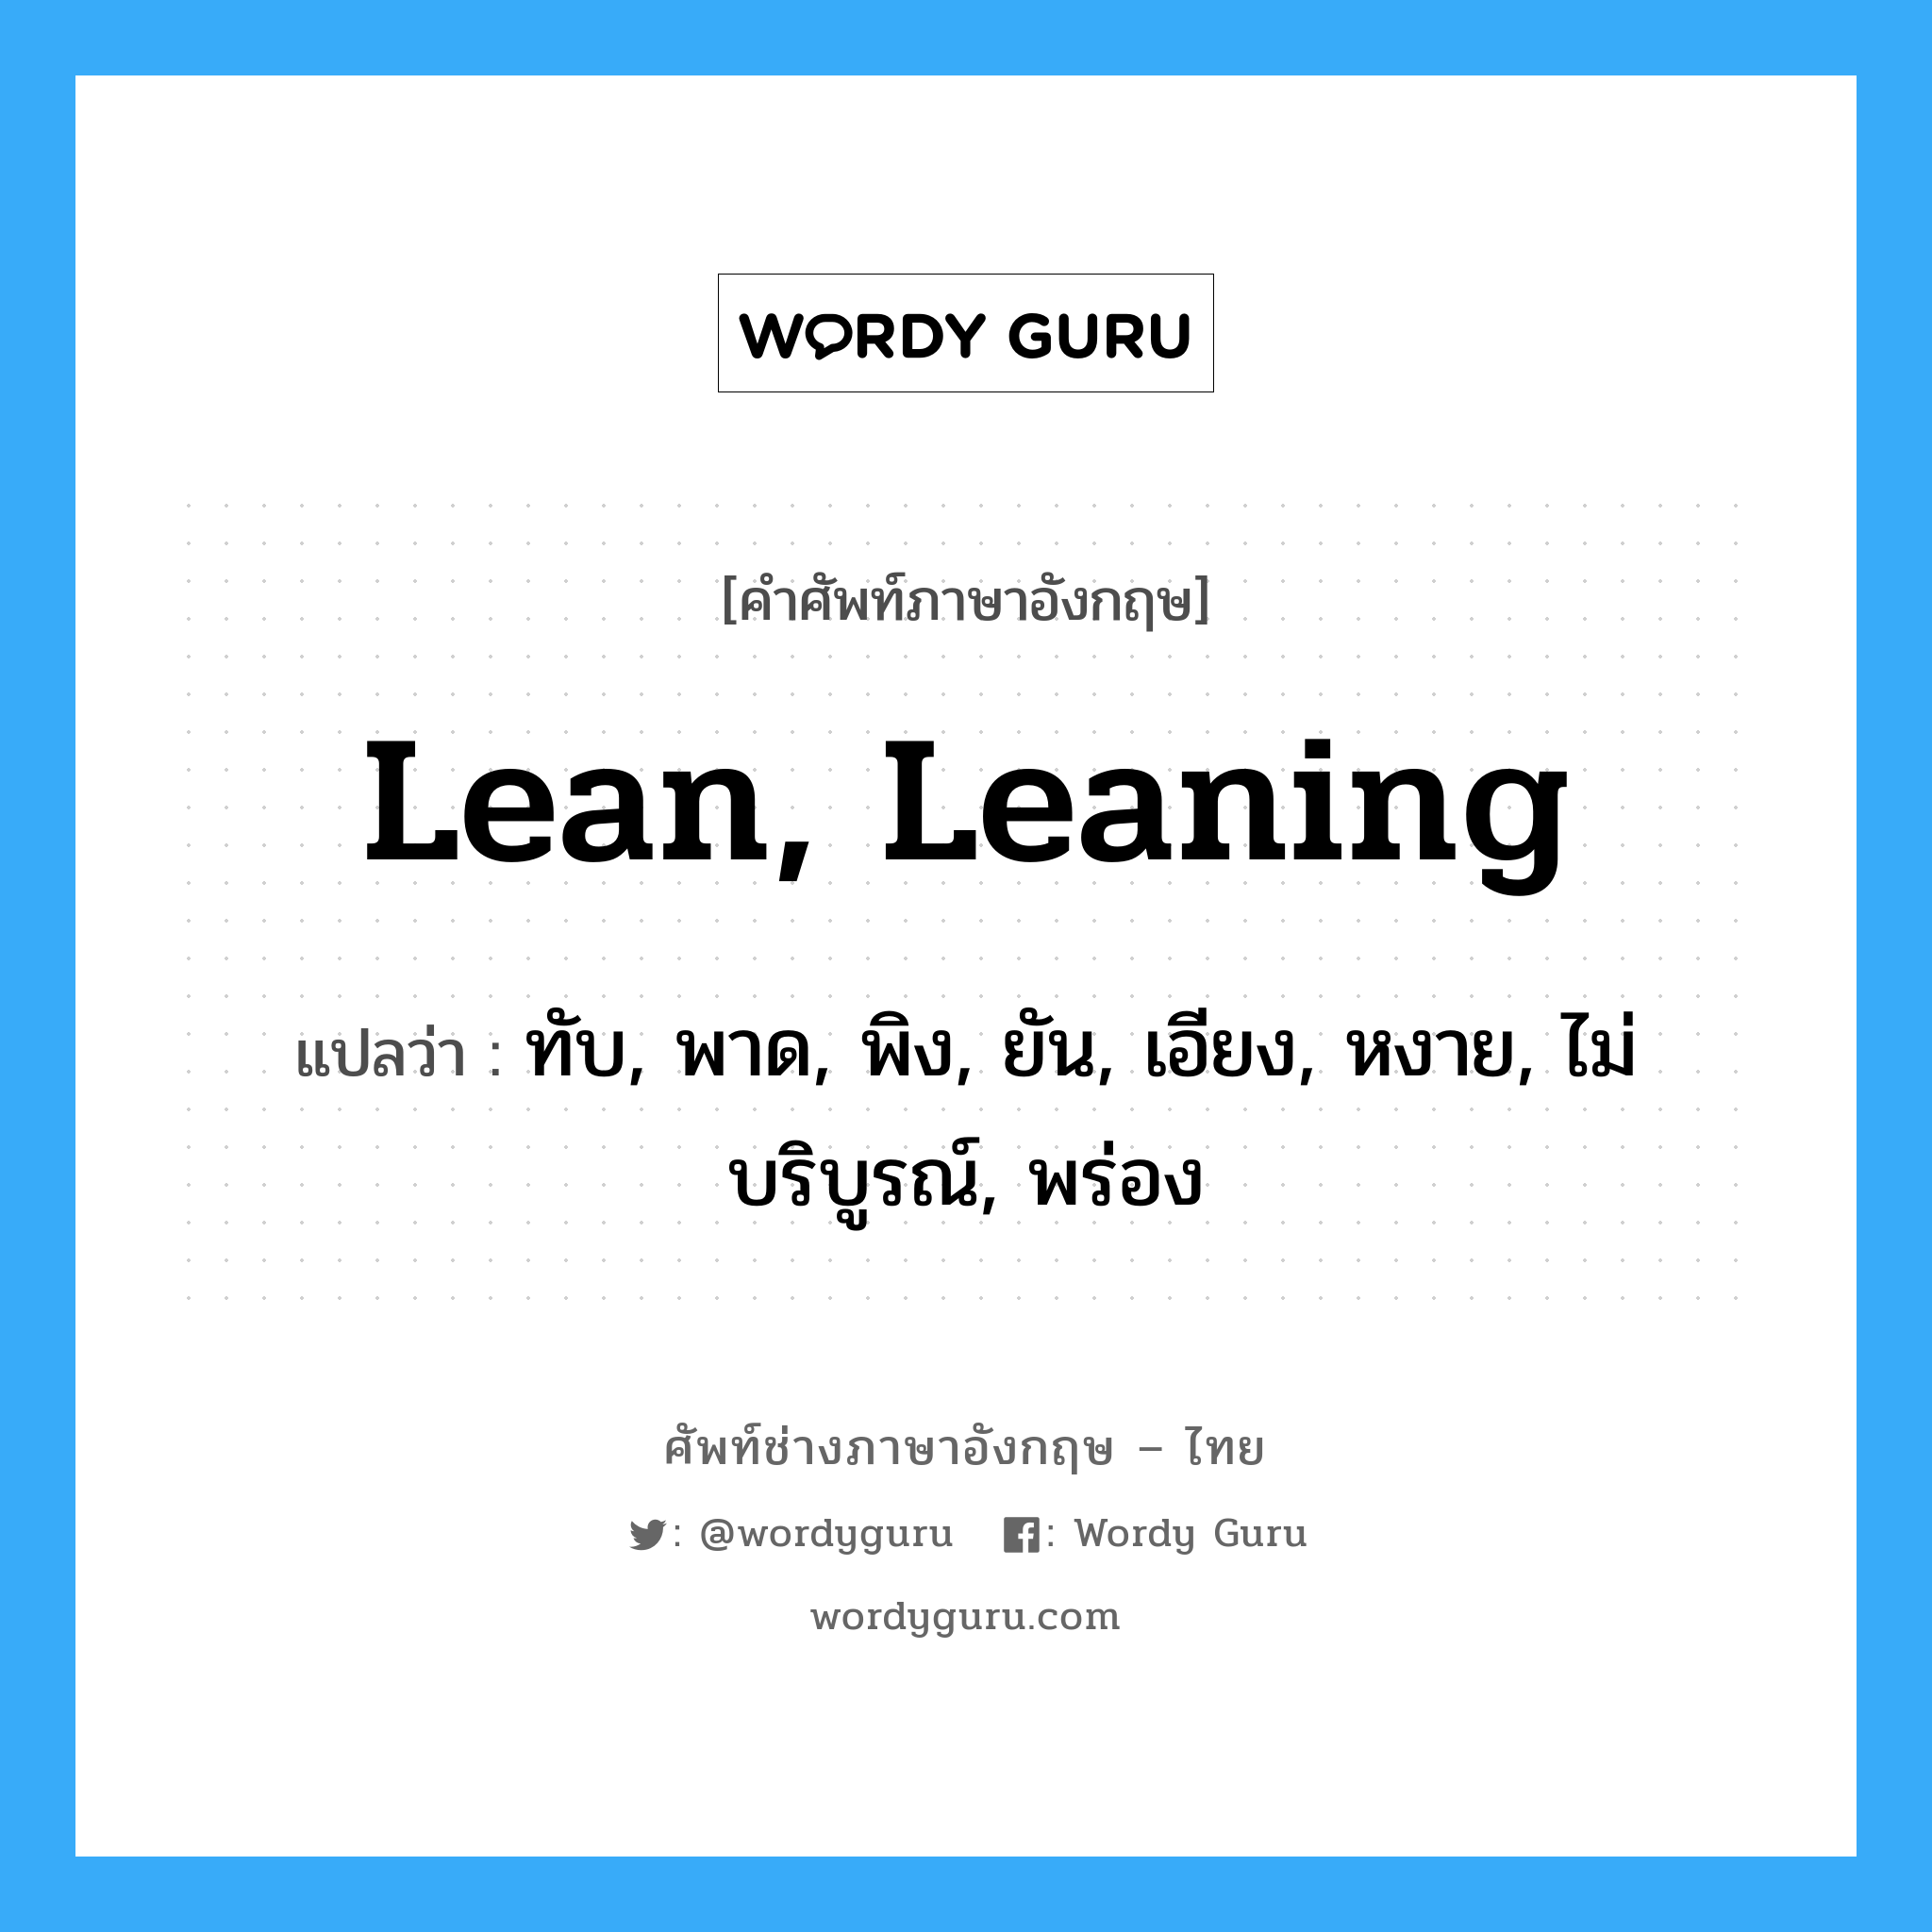 lean, leaning แปลว่า?, คำศัพท์ช่างภาษาอังกฤษ - ไทย lean, leaning คำศัพท์ภาษาอังกฤษ lean, leaning แปลว่า ทับ, พาด, พิง, ยัน, เอียง, หงาย, ไม่บริบูรณ์, พร่อง